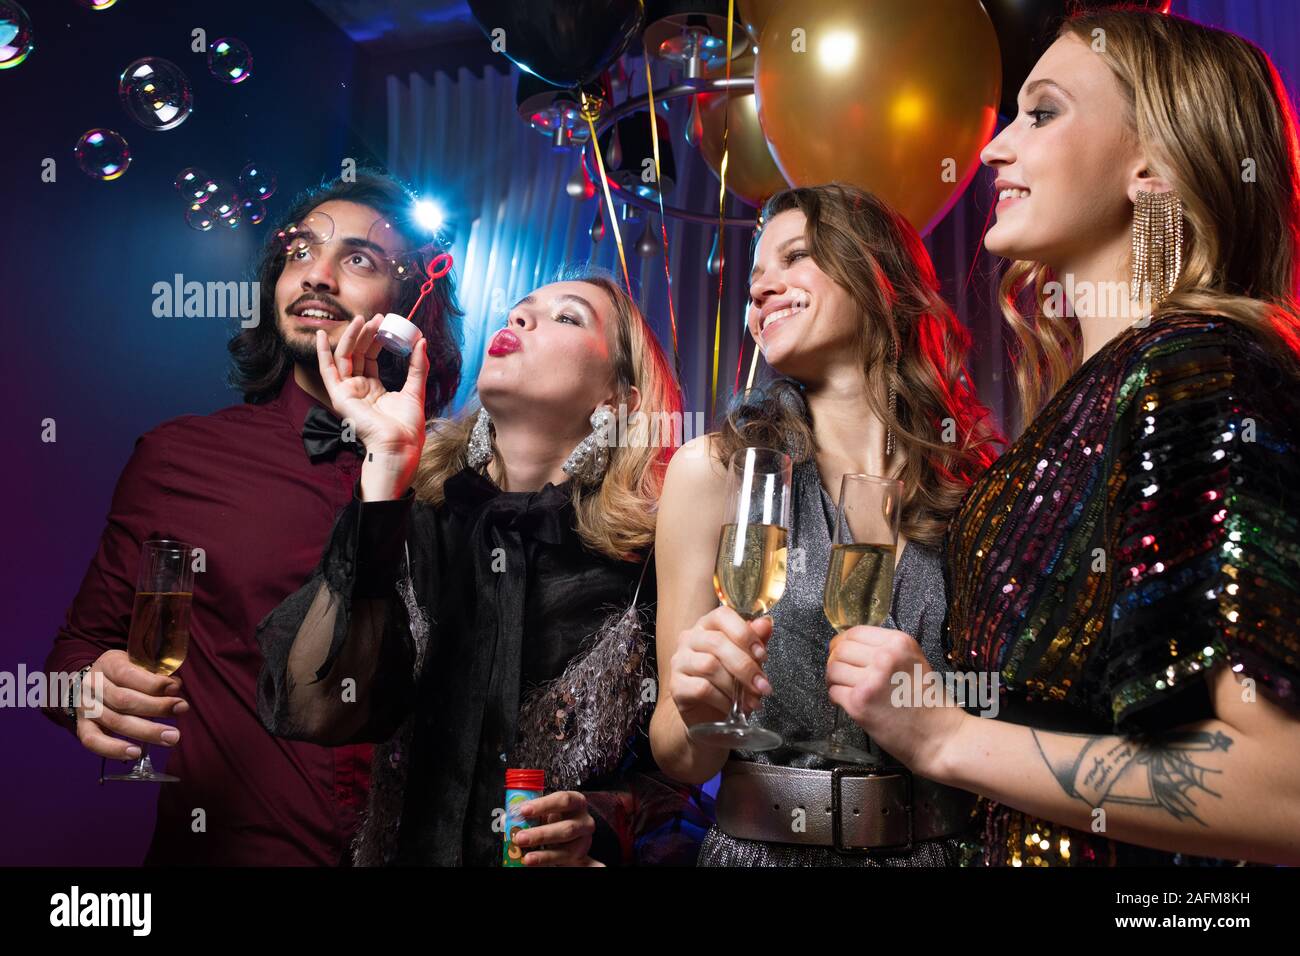 Glamorous girl blowing soap bubbles entre amis avec des flûtes de champagne Banque D'Images